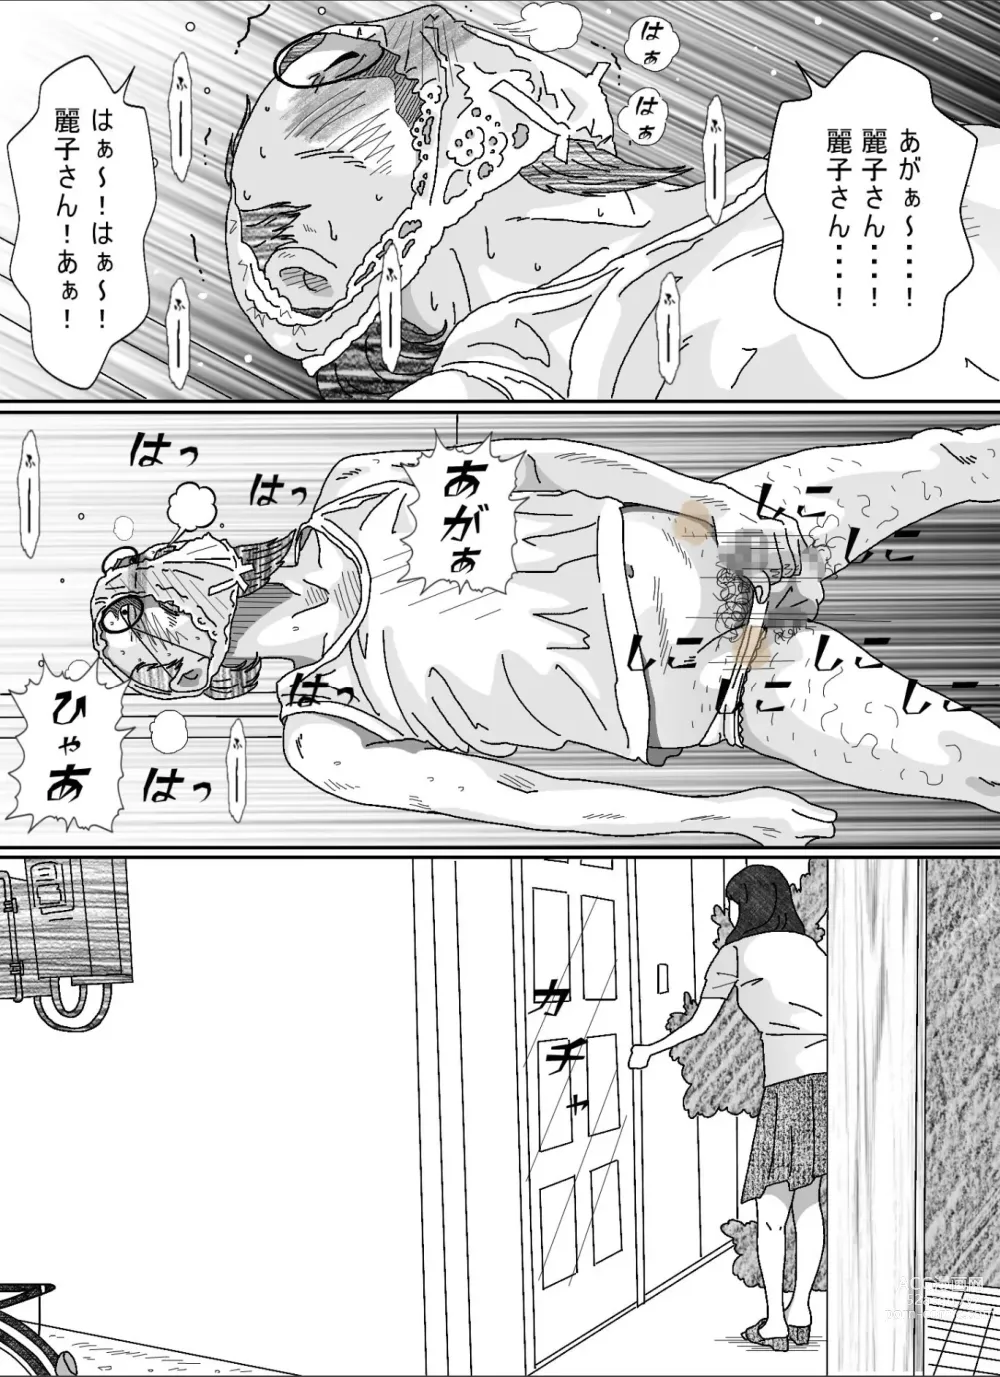 Page 32 of doujinshi Musuko no Yome